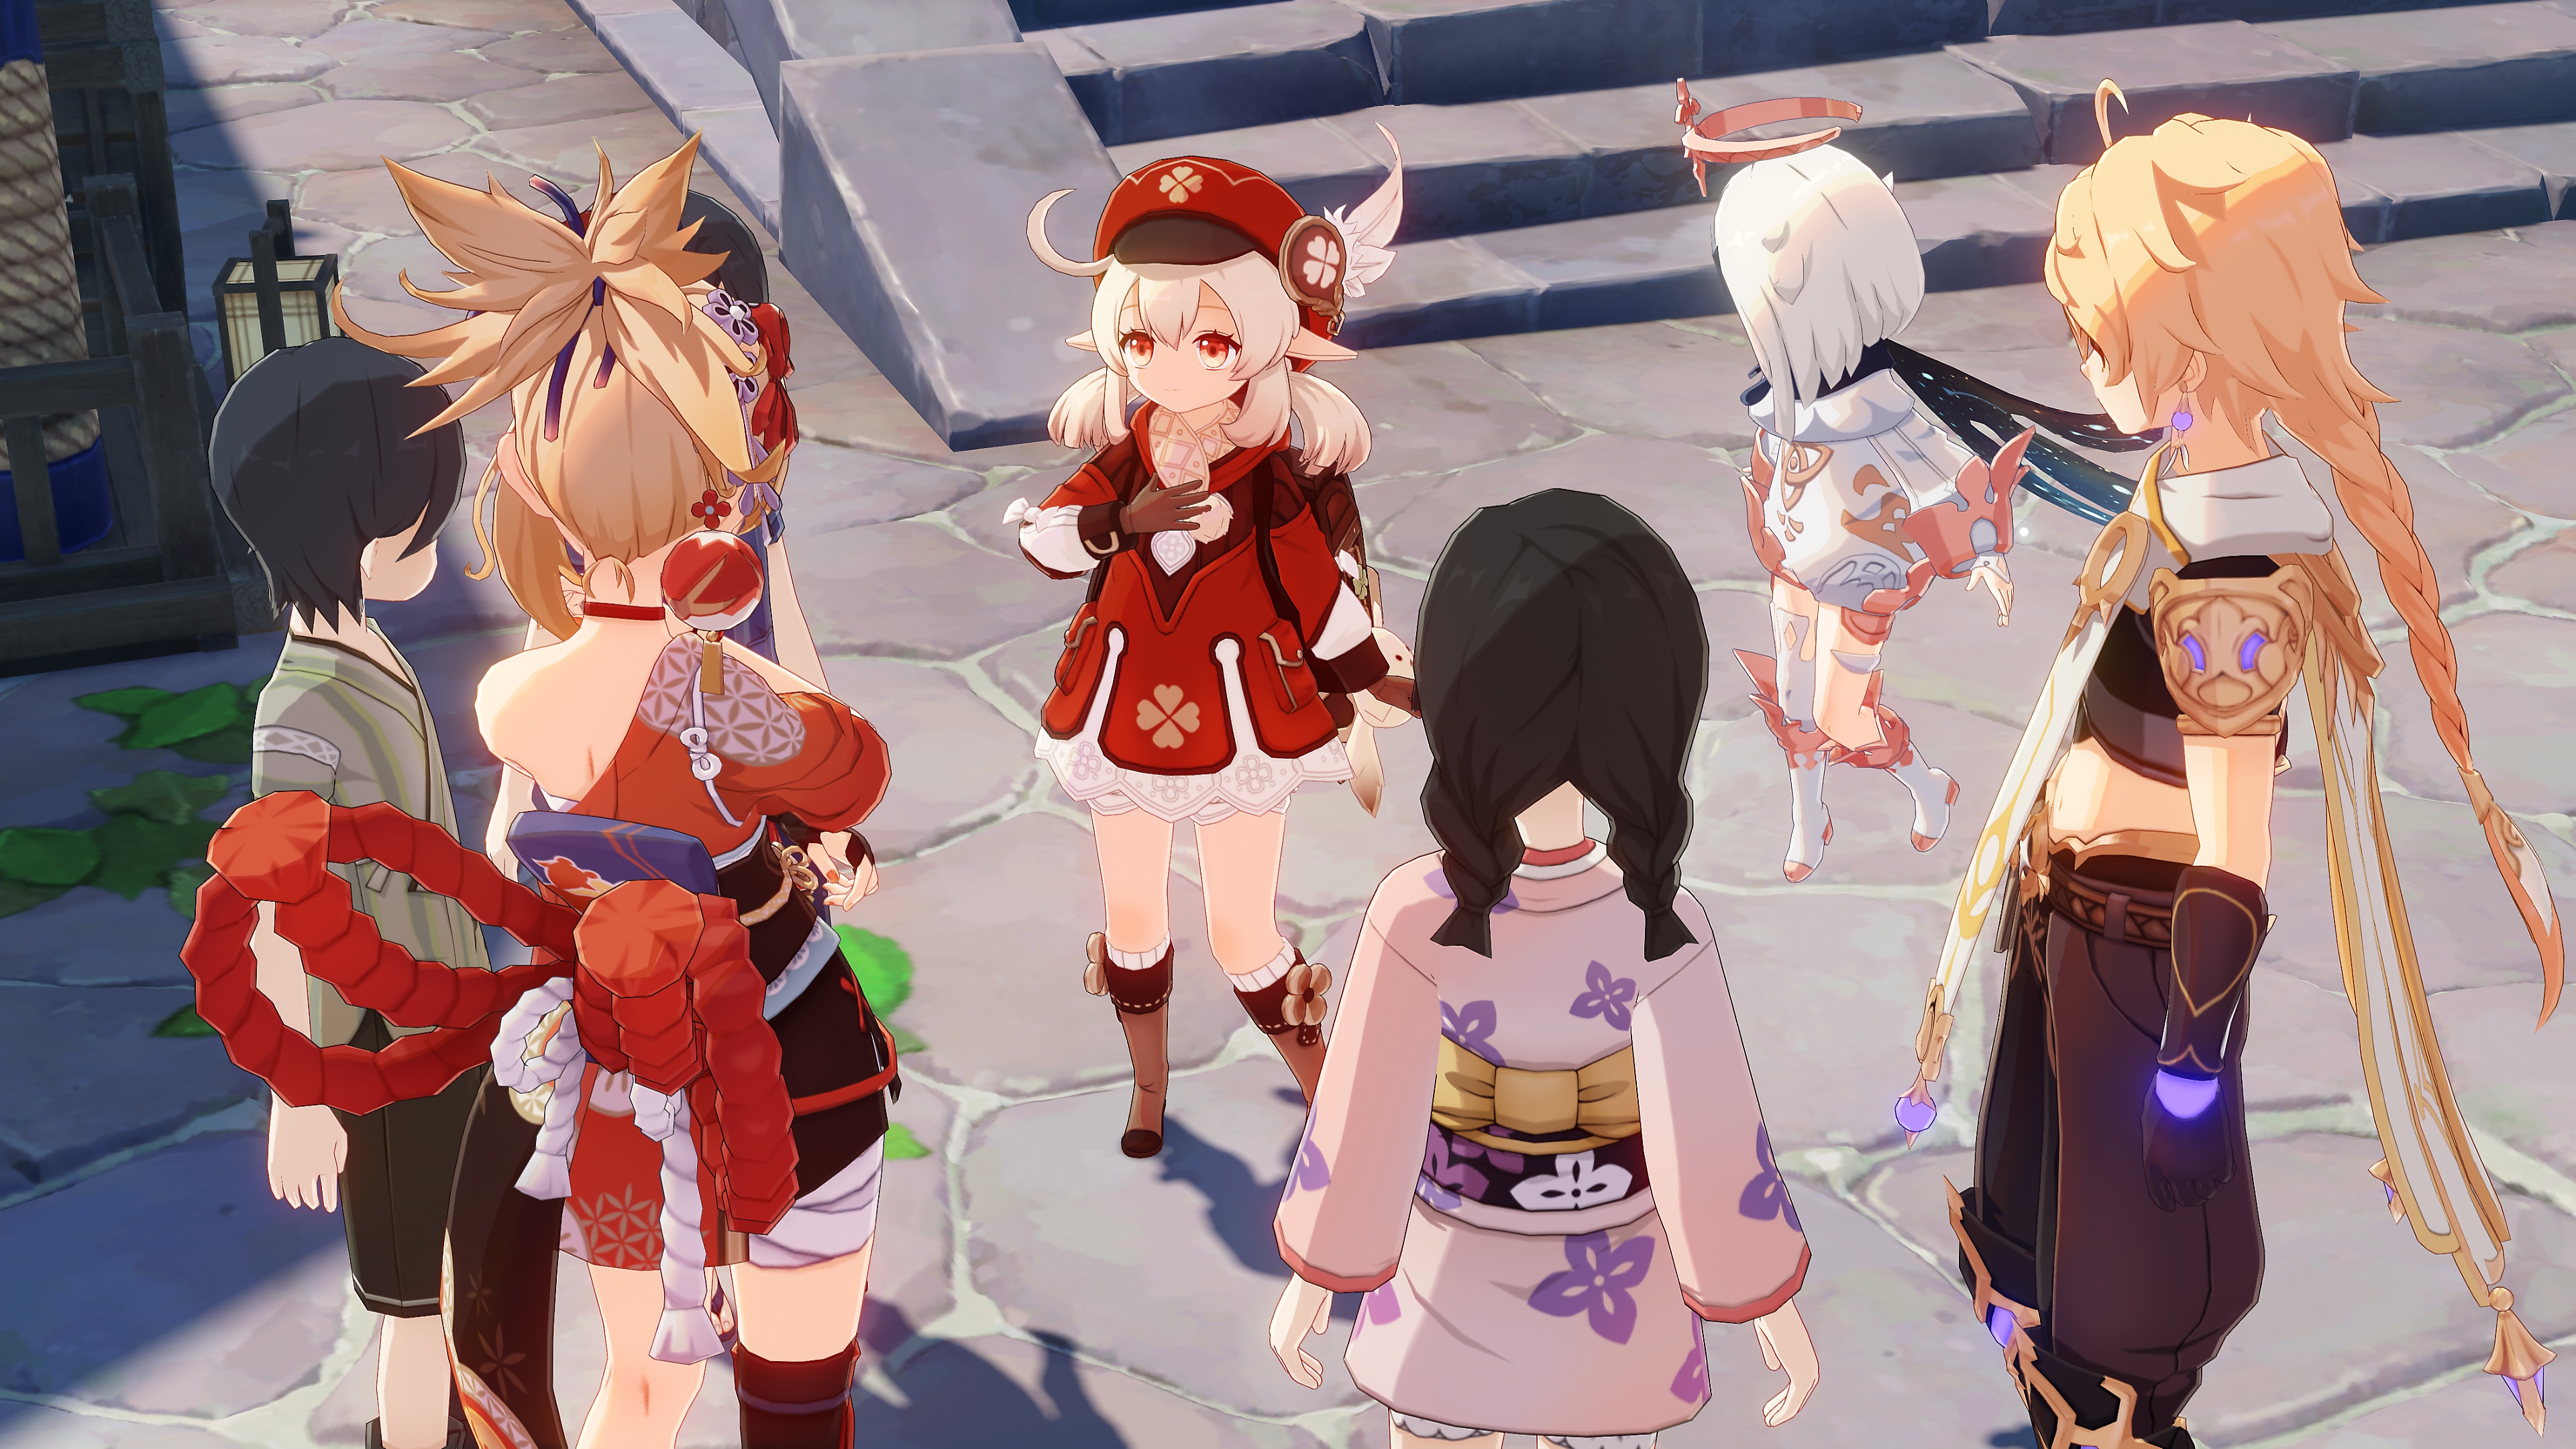 Impacto de GenShin: Captura de pantalla de Actualización 2.6 que muestra a un grupo de personajes parados en un círculo